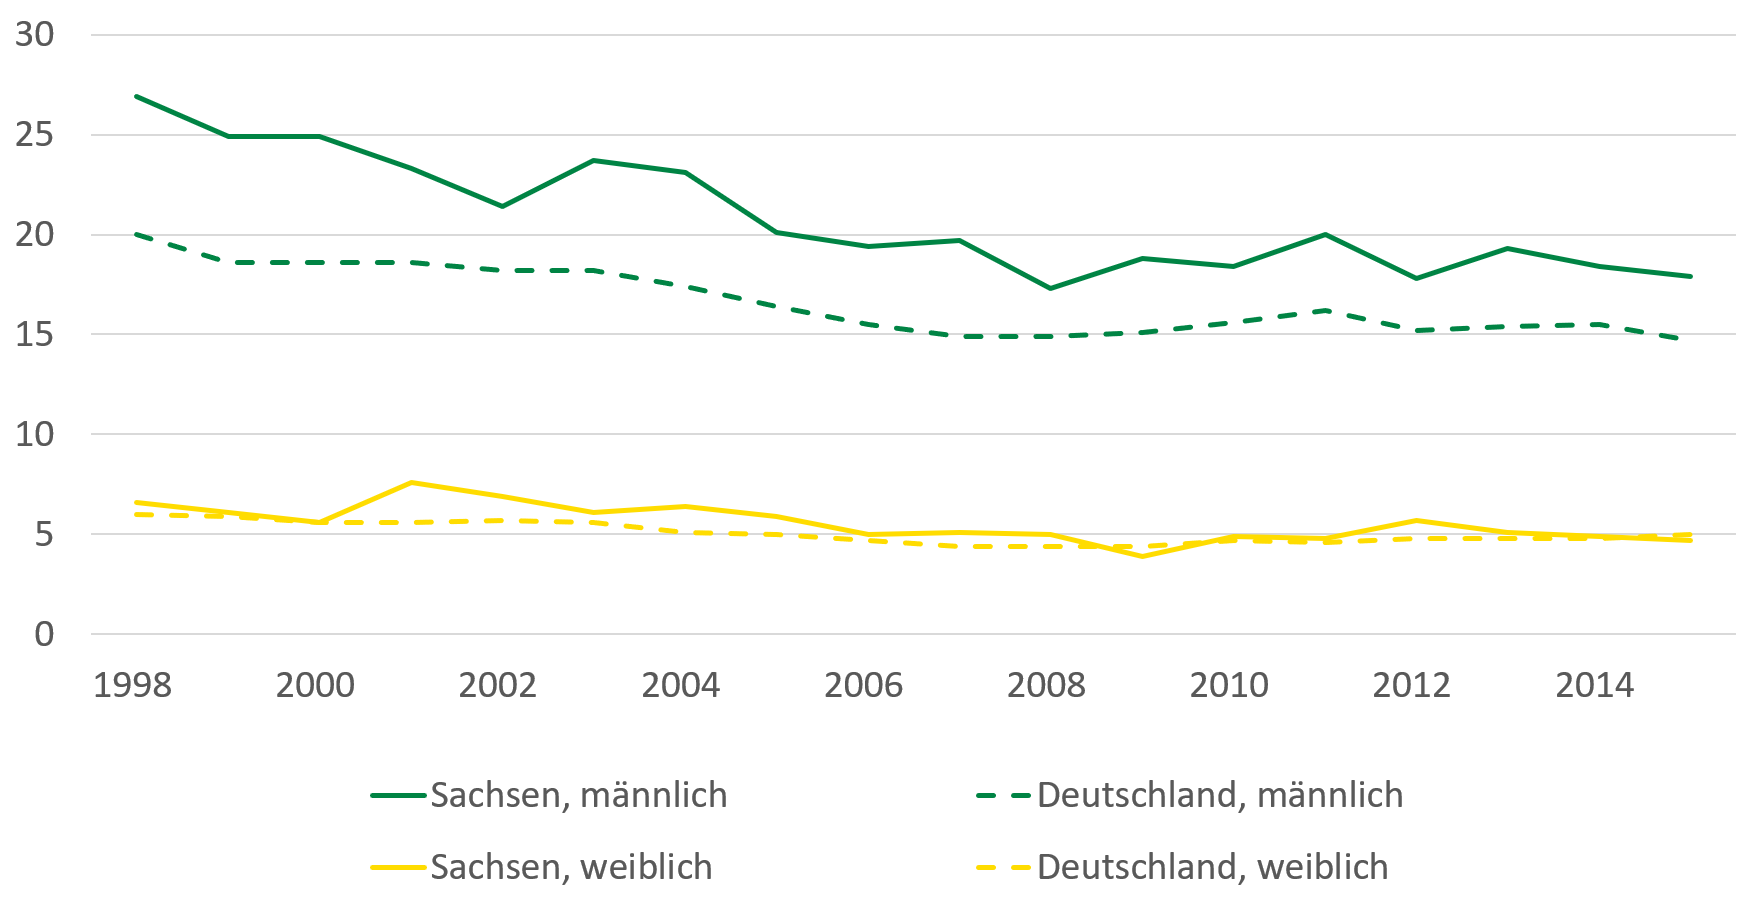 Die Anzahl Gestorbener aufgrund von Suizid war bei Männern in Sachsen höher als im deutschen Durchschnitt. Sowohl in Sachsen wie auch in Deutschland zeigt sich allerdings ein Rückgang der Anzahl. Bei Frauen ist die Anzahl in Sachsen wie in Gesamtdeutschland. Die Anzahl der Suizidfälle bei Frauen zeigt einen geringeren Rückgang.